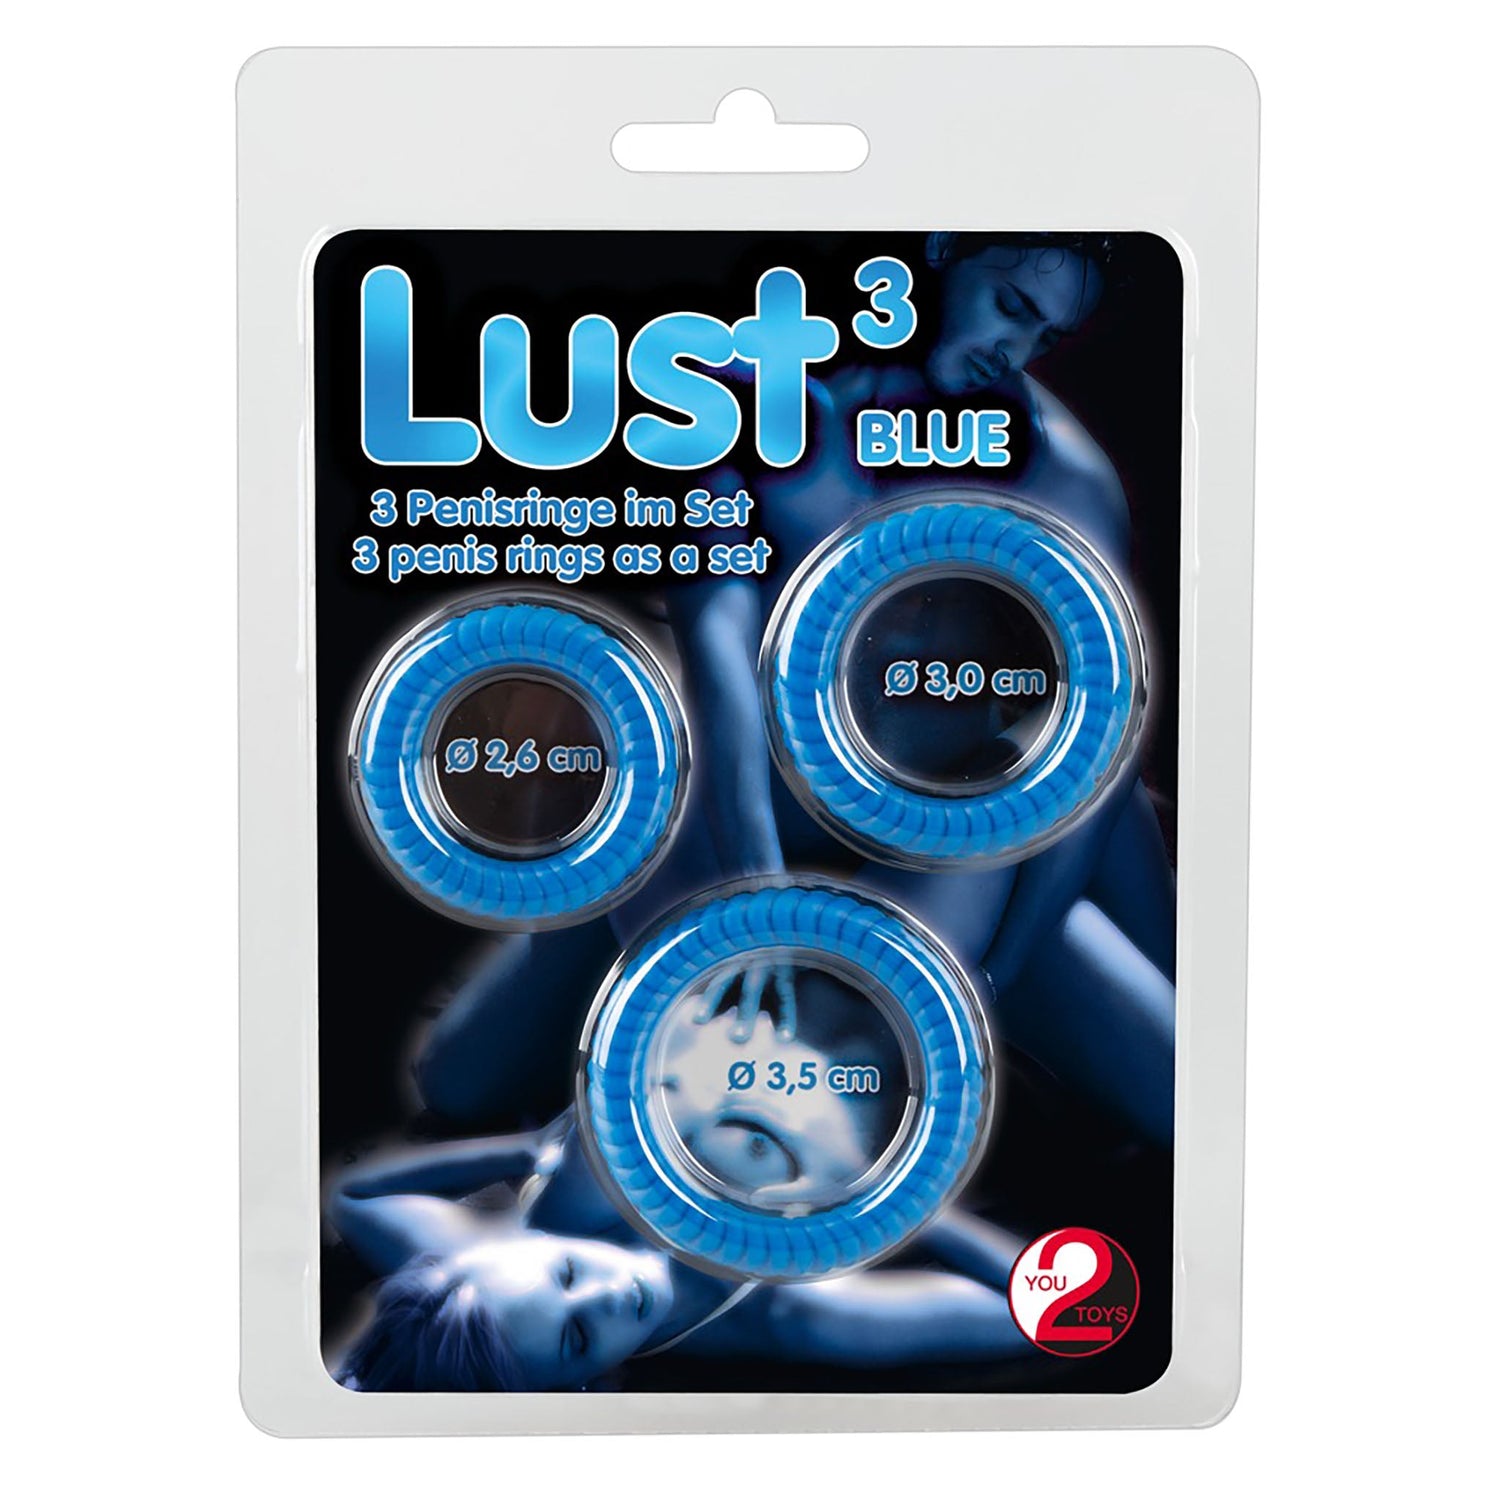 Lust 3 Penisringe, Penis ring set blau in Verpackung